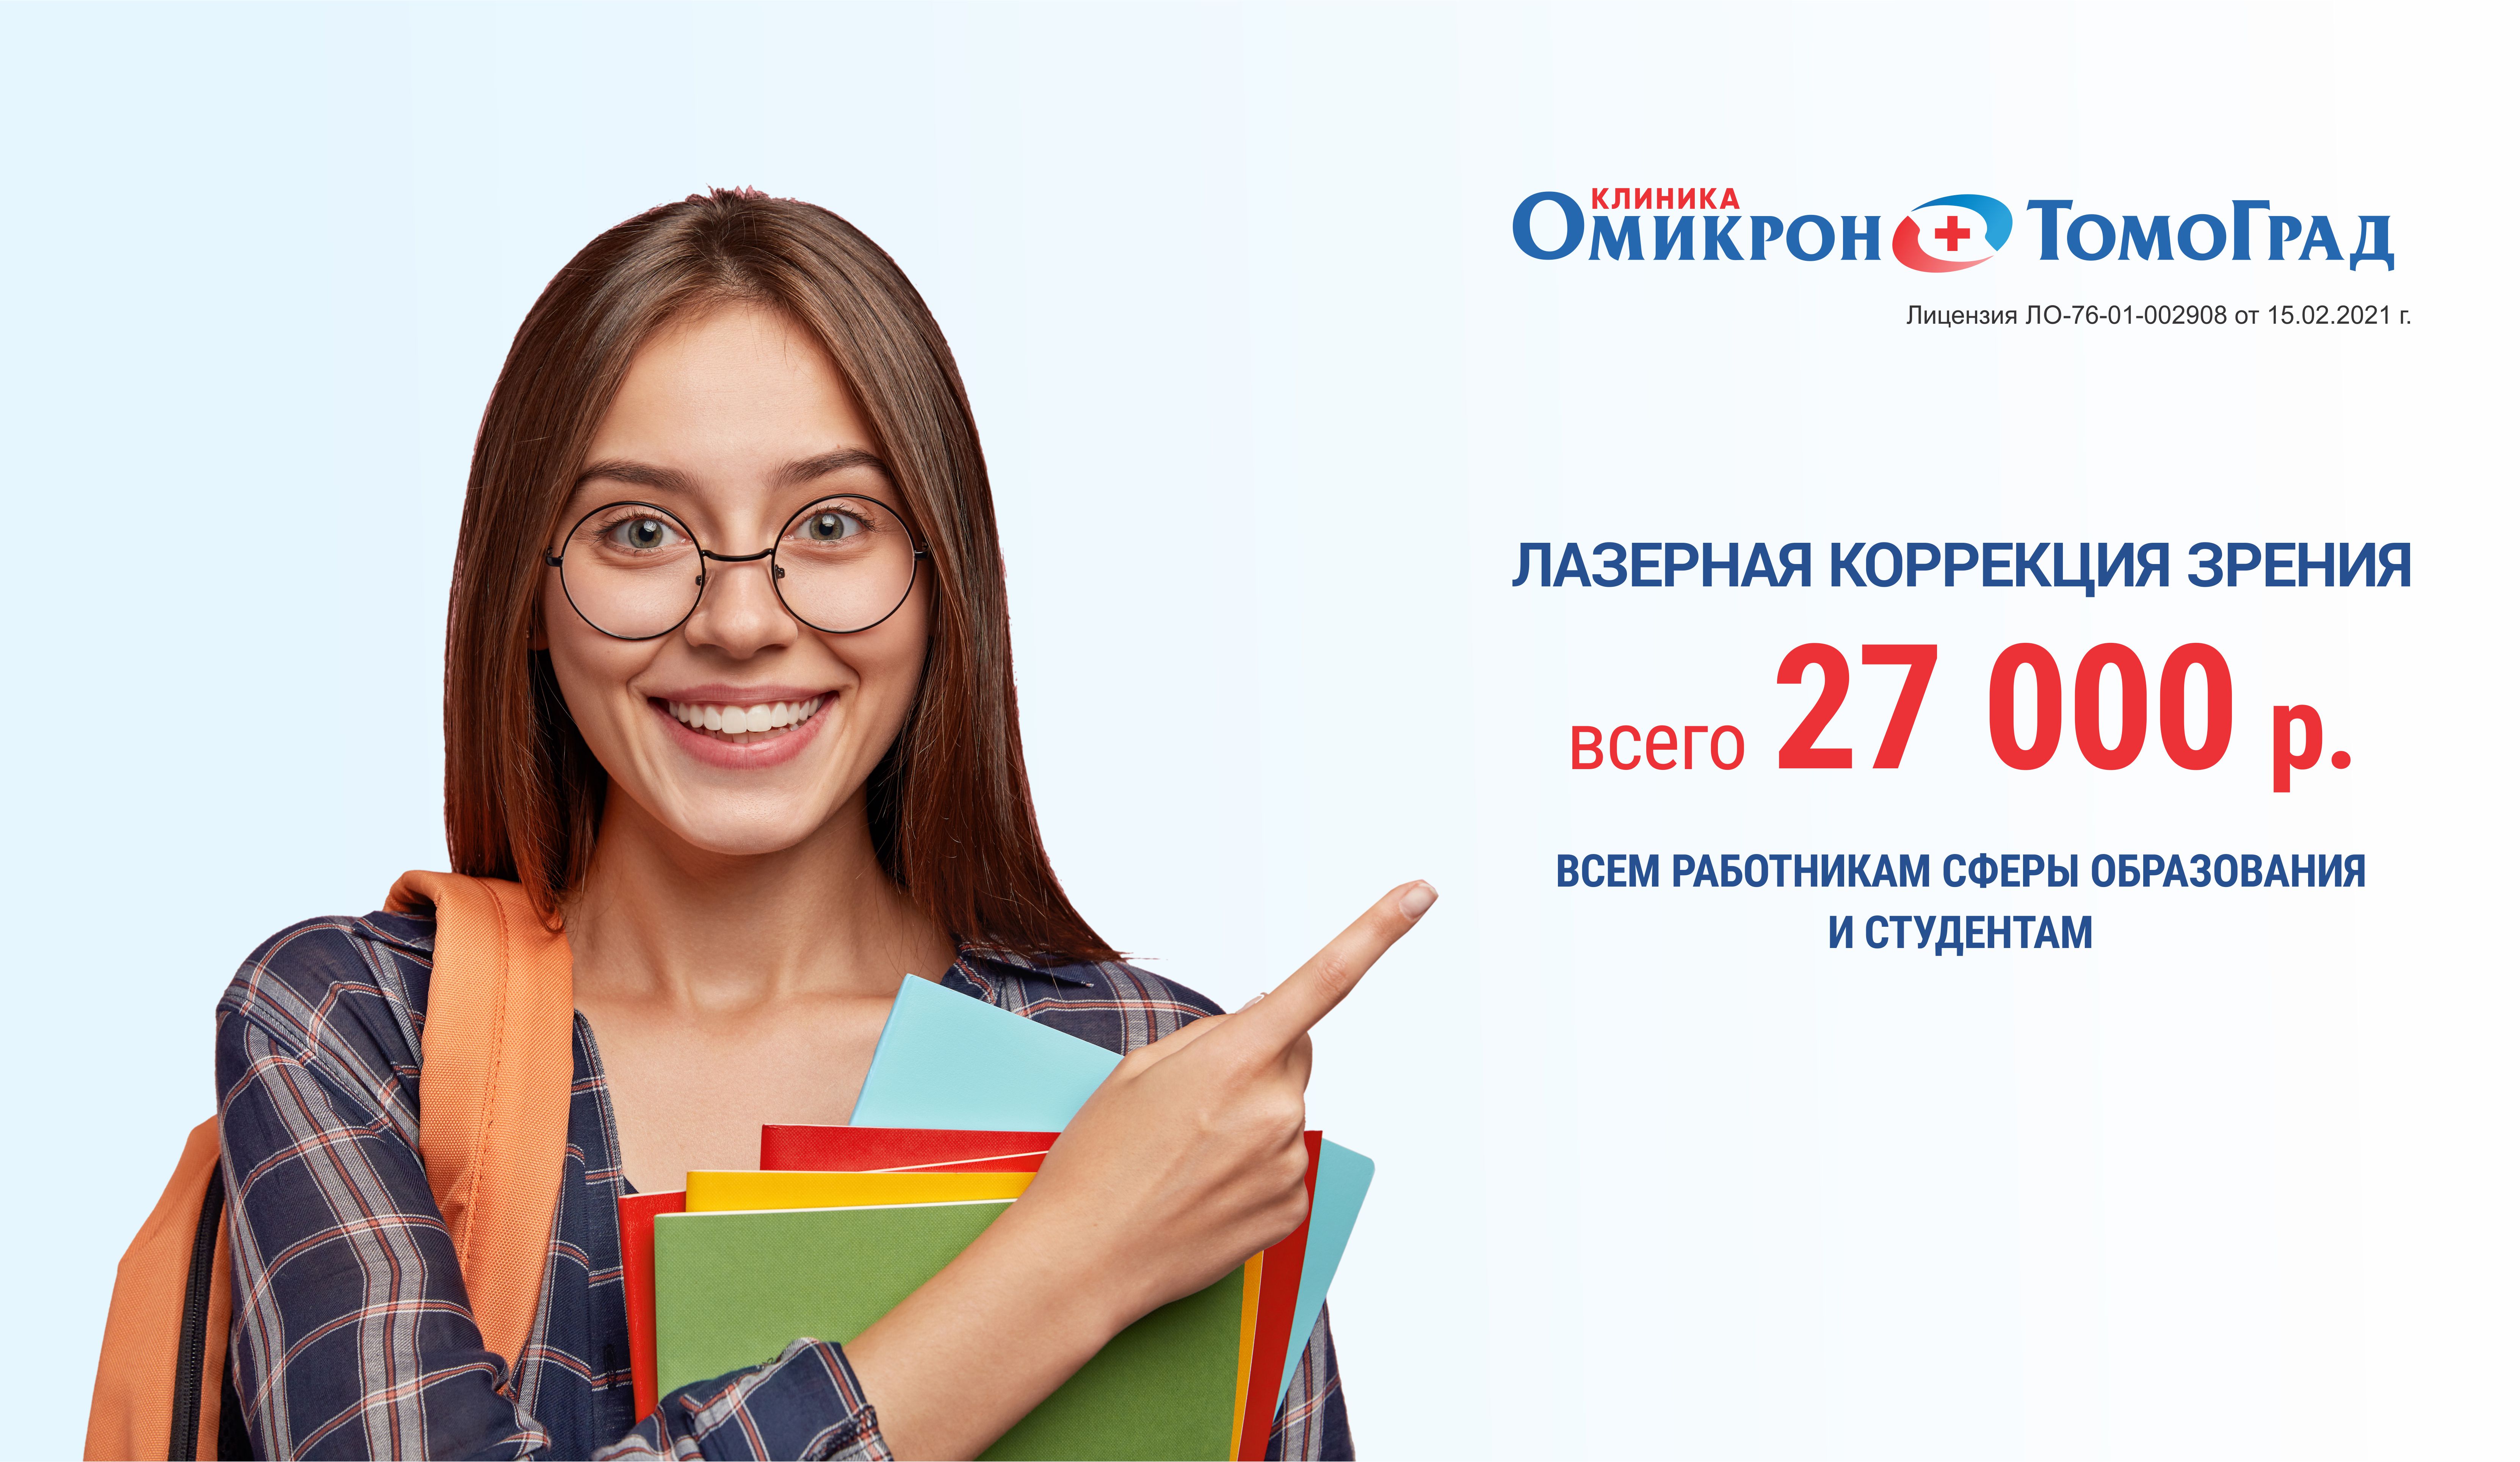 Идеальное зрение всего за 27 000 р! Только для работников сферы образования и студентов только до 30 июня! 